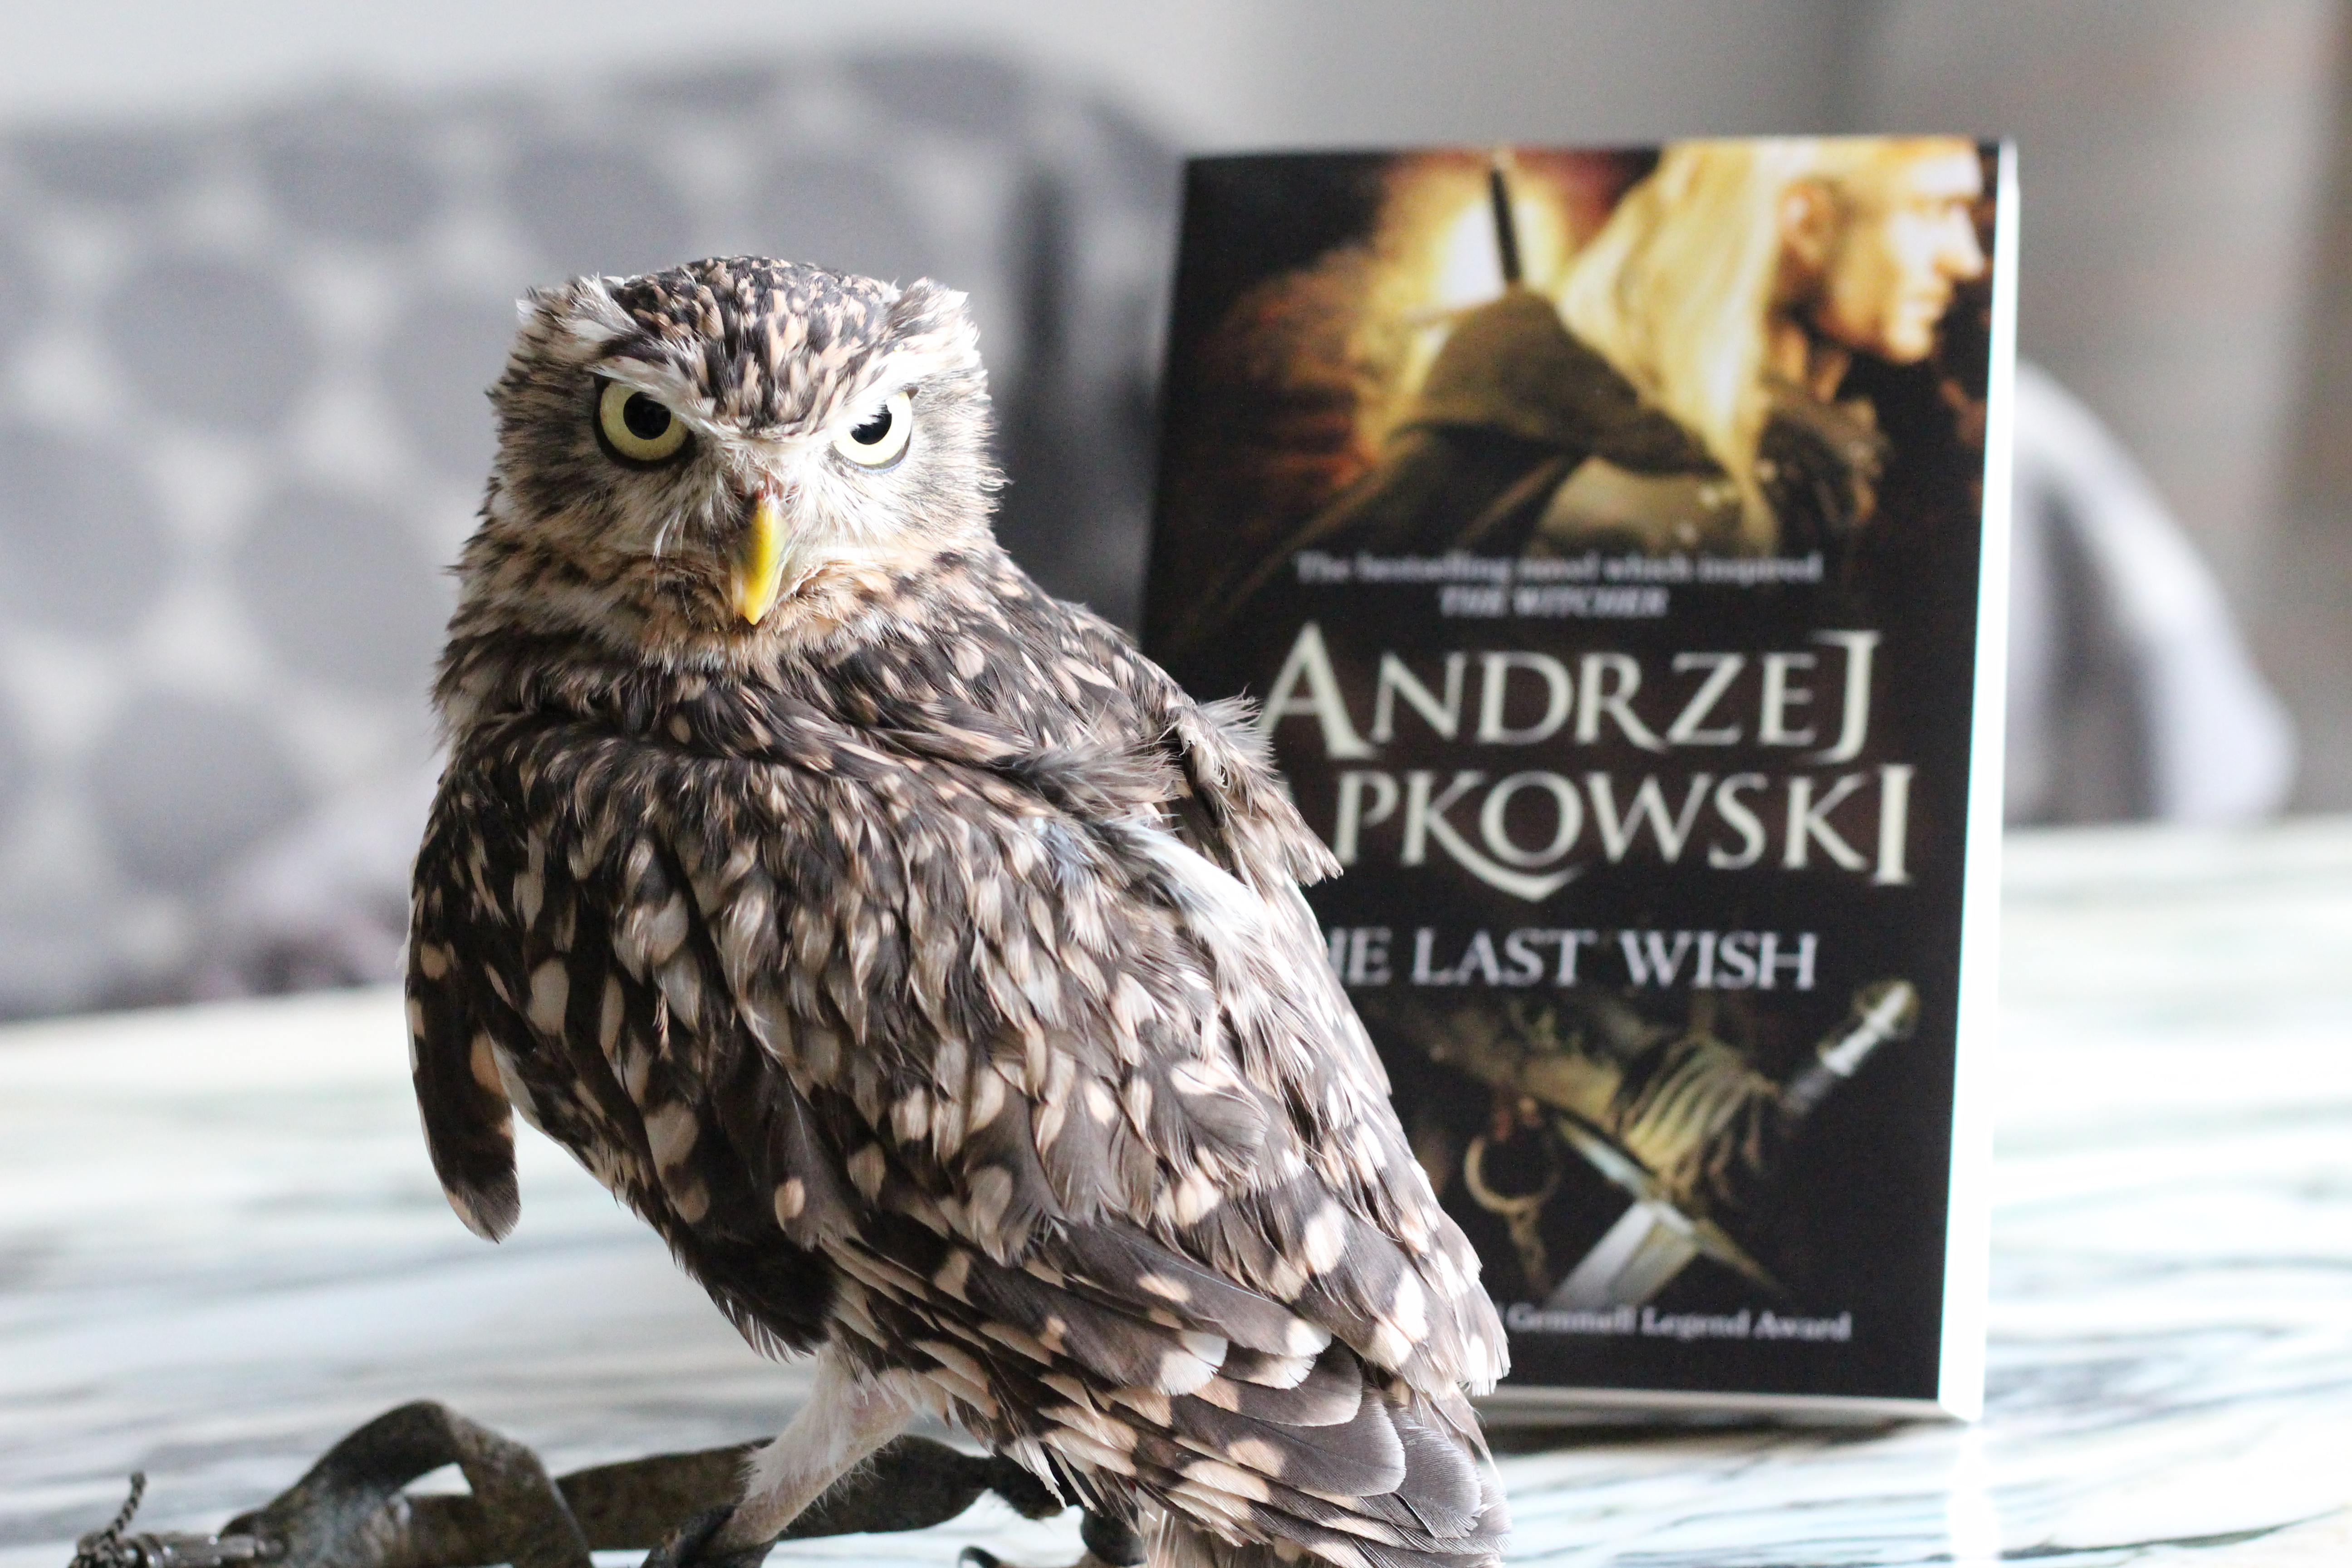 Owl The Last Wish Andrzej Sapkowski